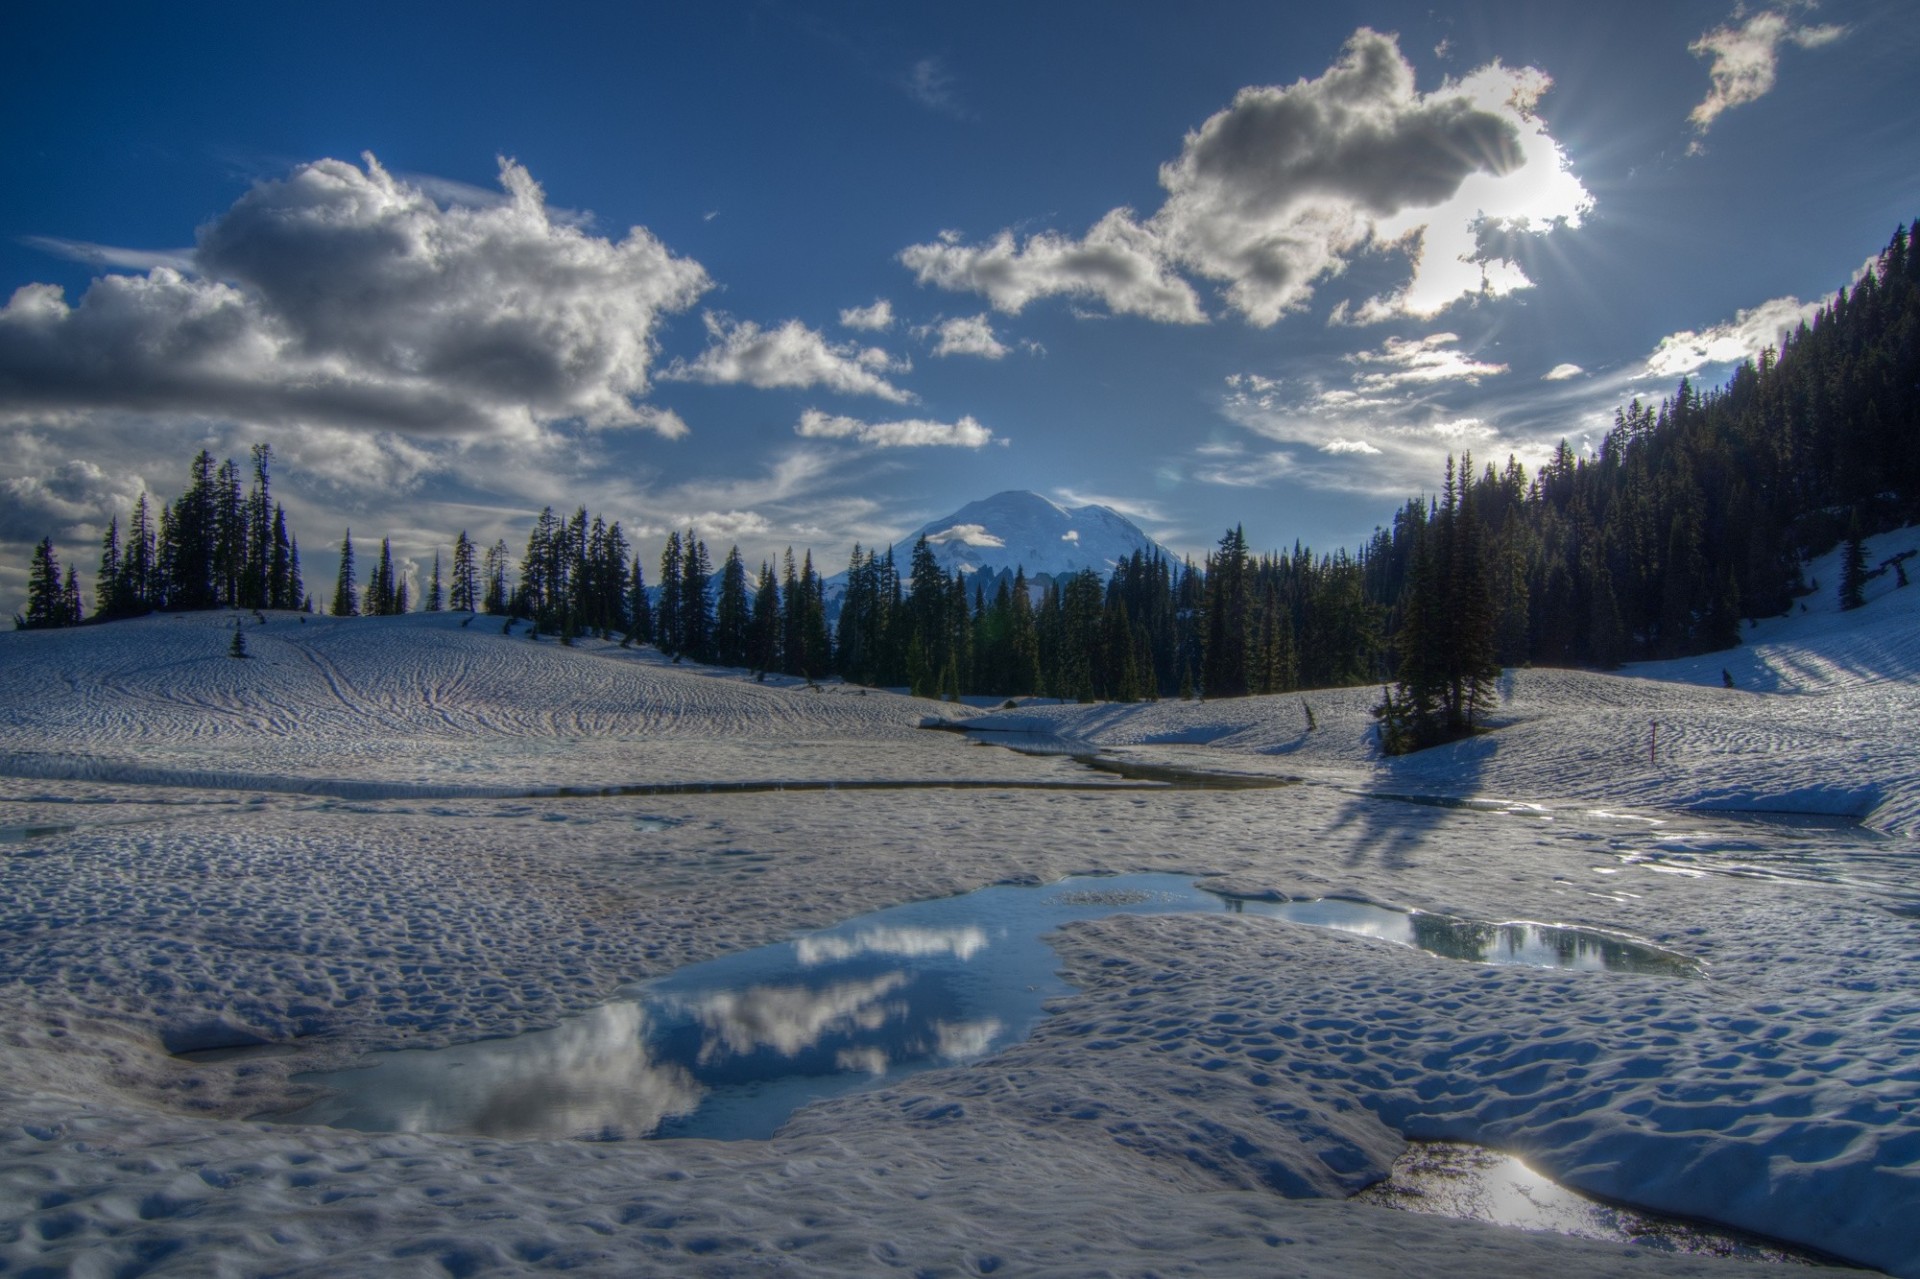 Mount Rainier Reflected in Tipsoo Lake, Washington загрузить